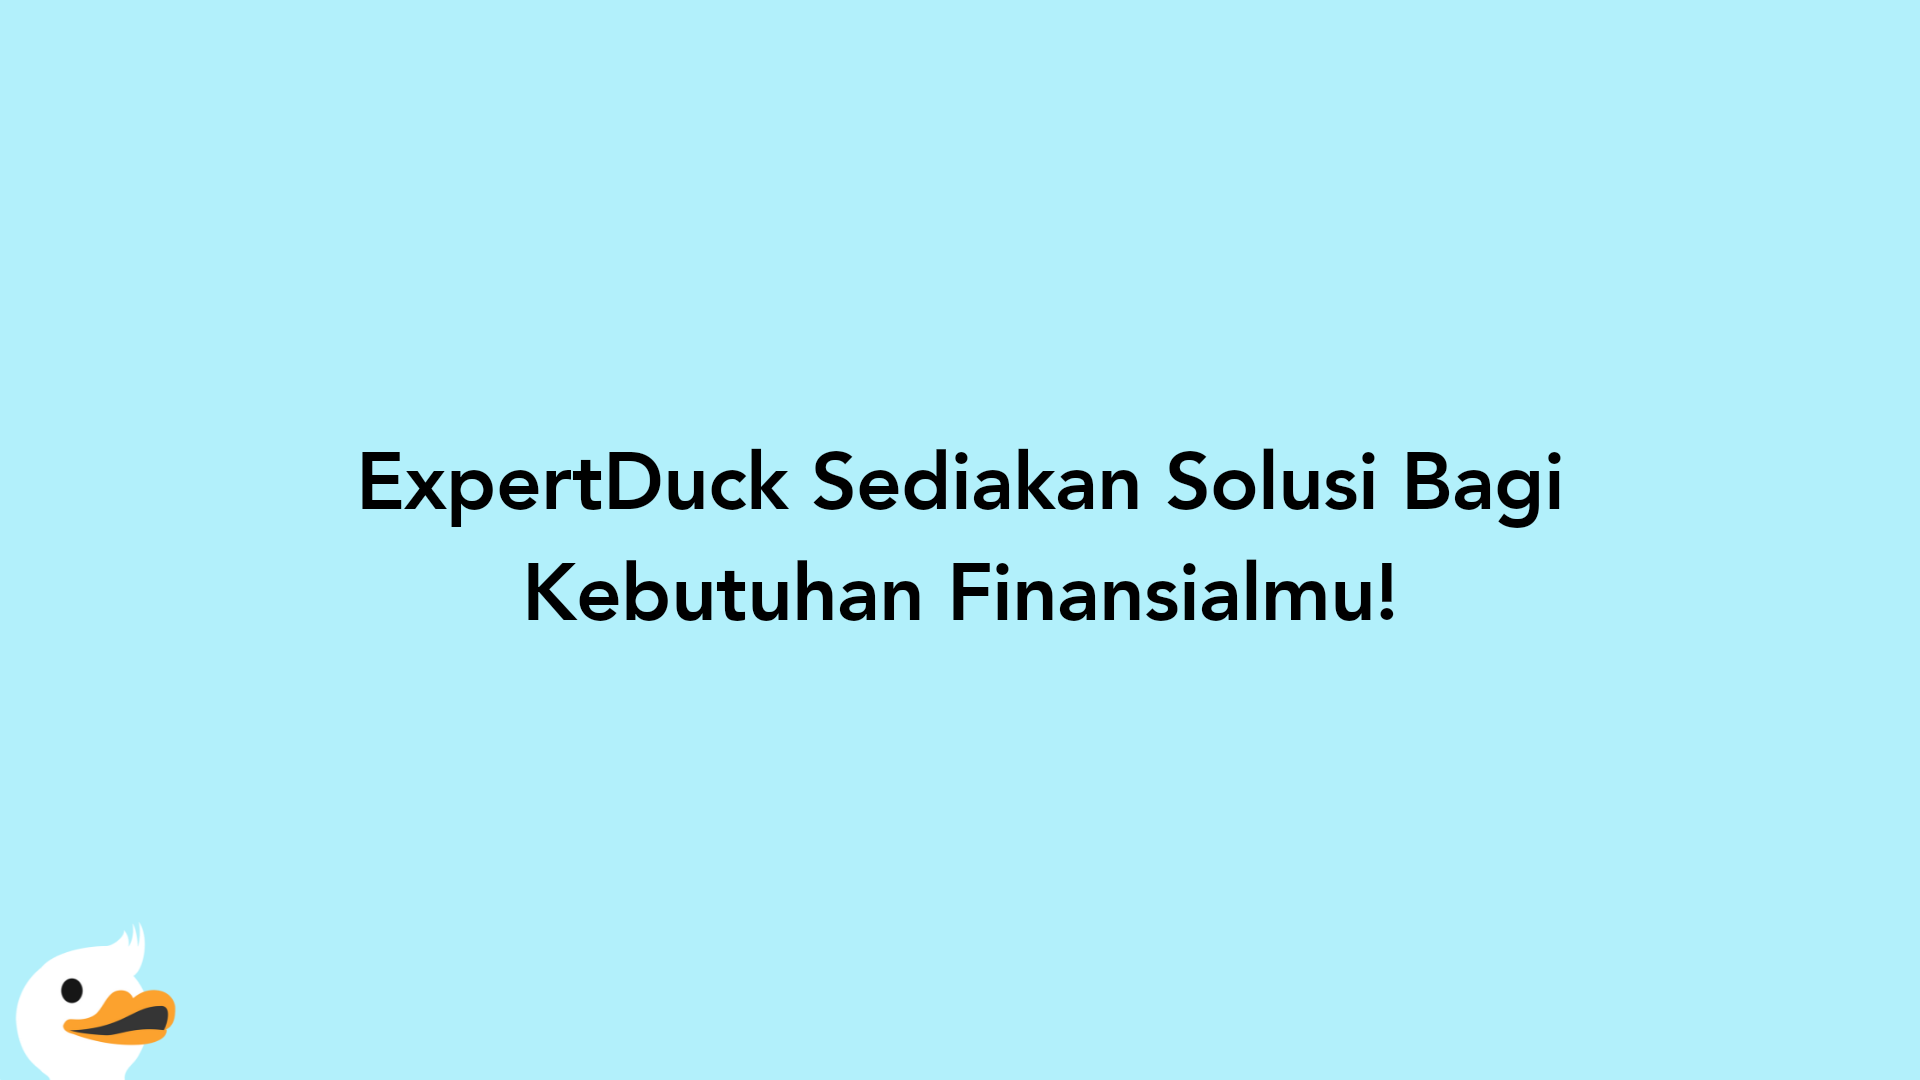 ExpertDuck Sediakan Solusi Bagi Kebutuhan Finansialmu!